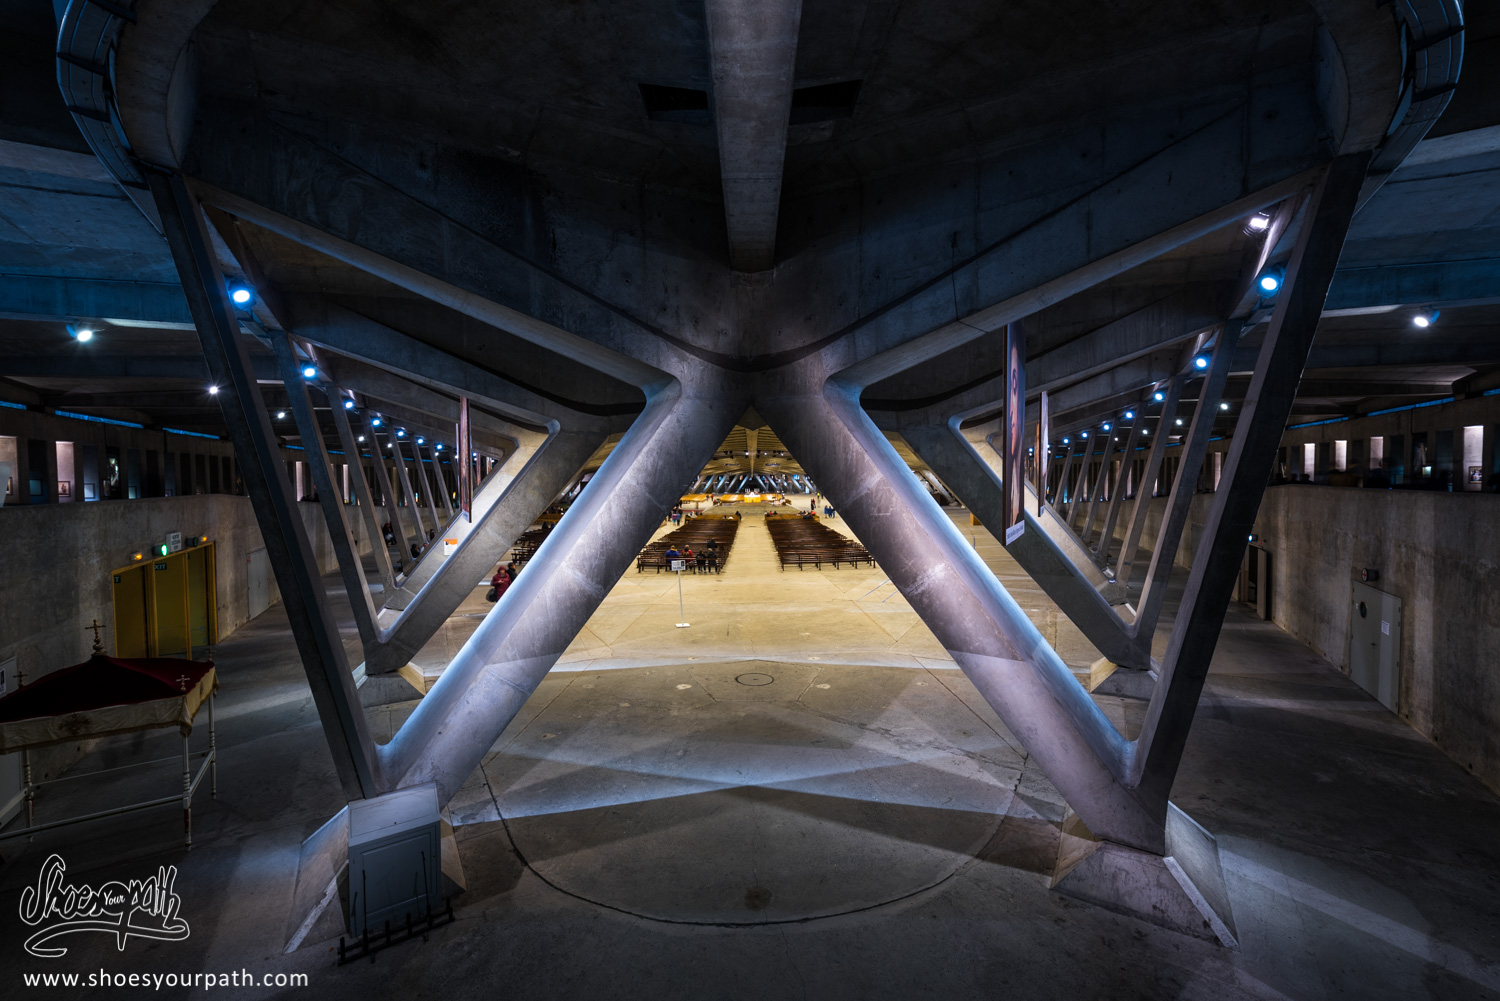 La basilique souterraine Pie-X de Lourdes, avec sa capacité d'accueil de 6500 personnes. Un petit air de vaisseau spatial non ?